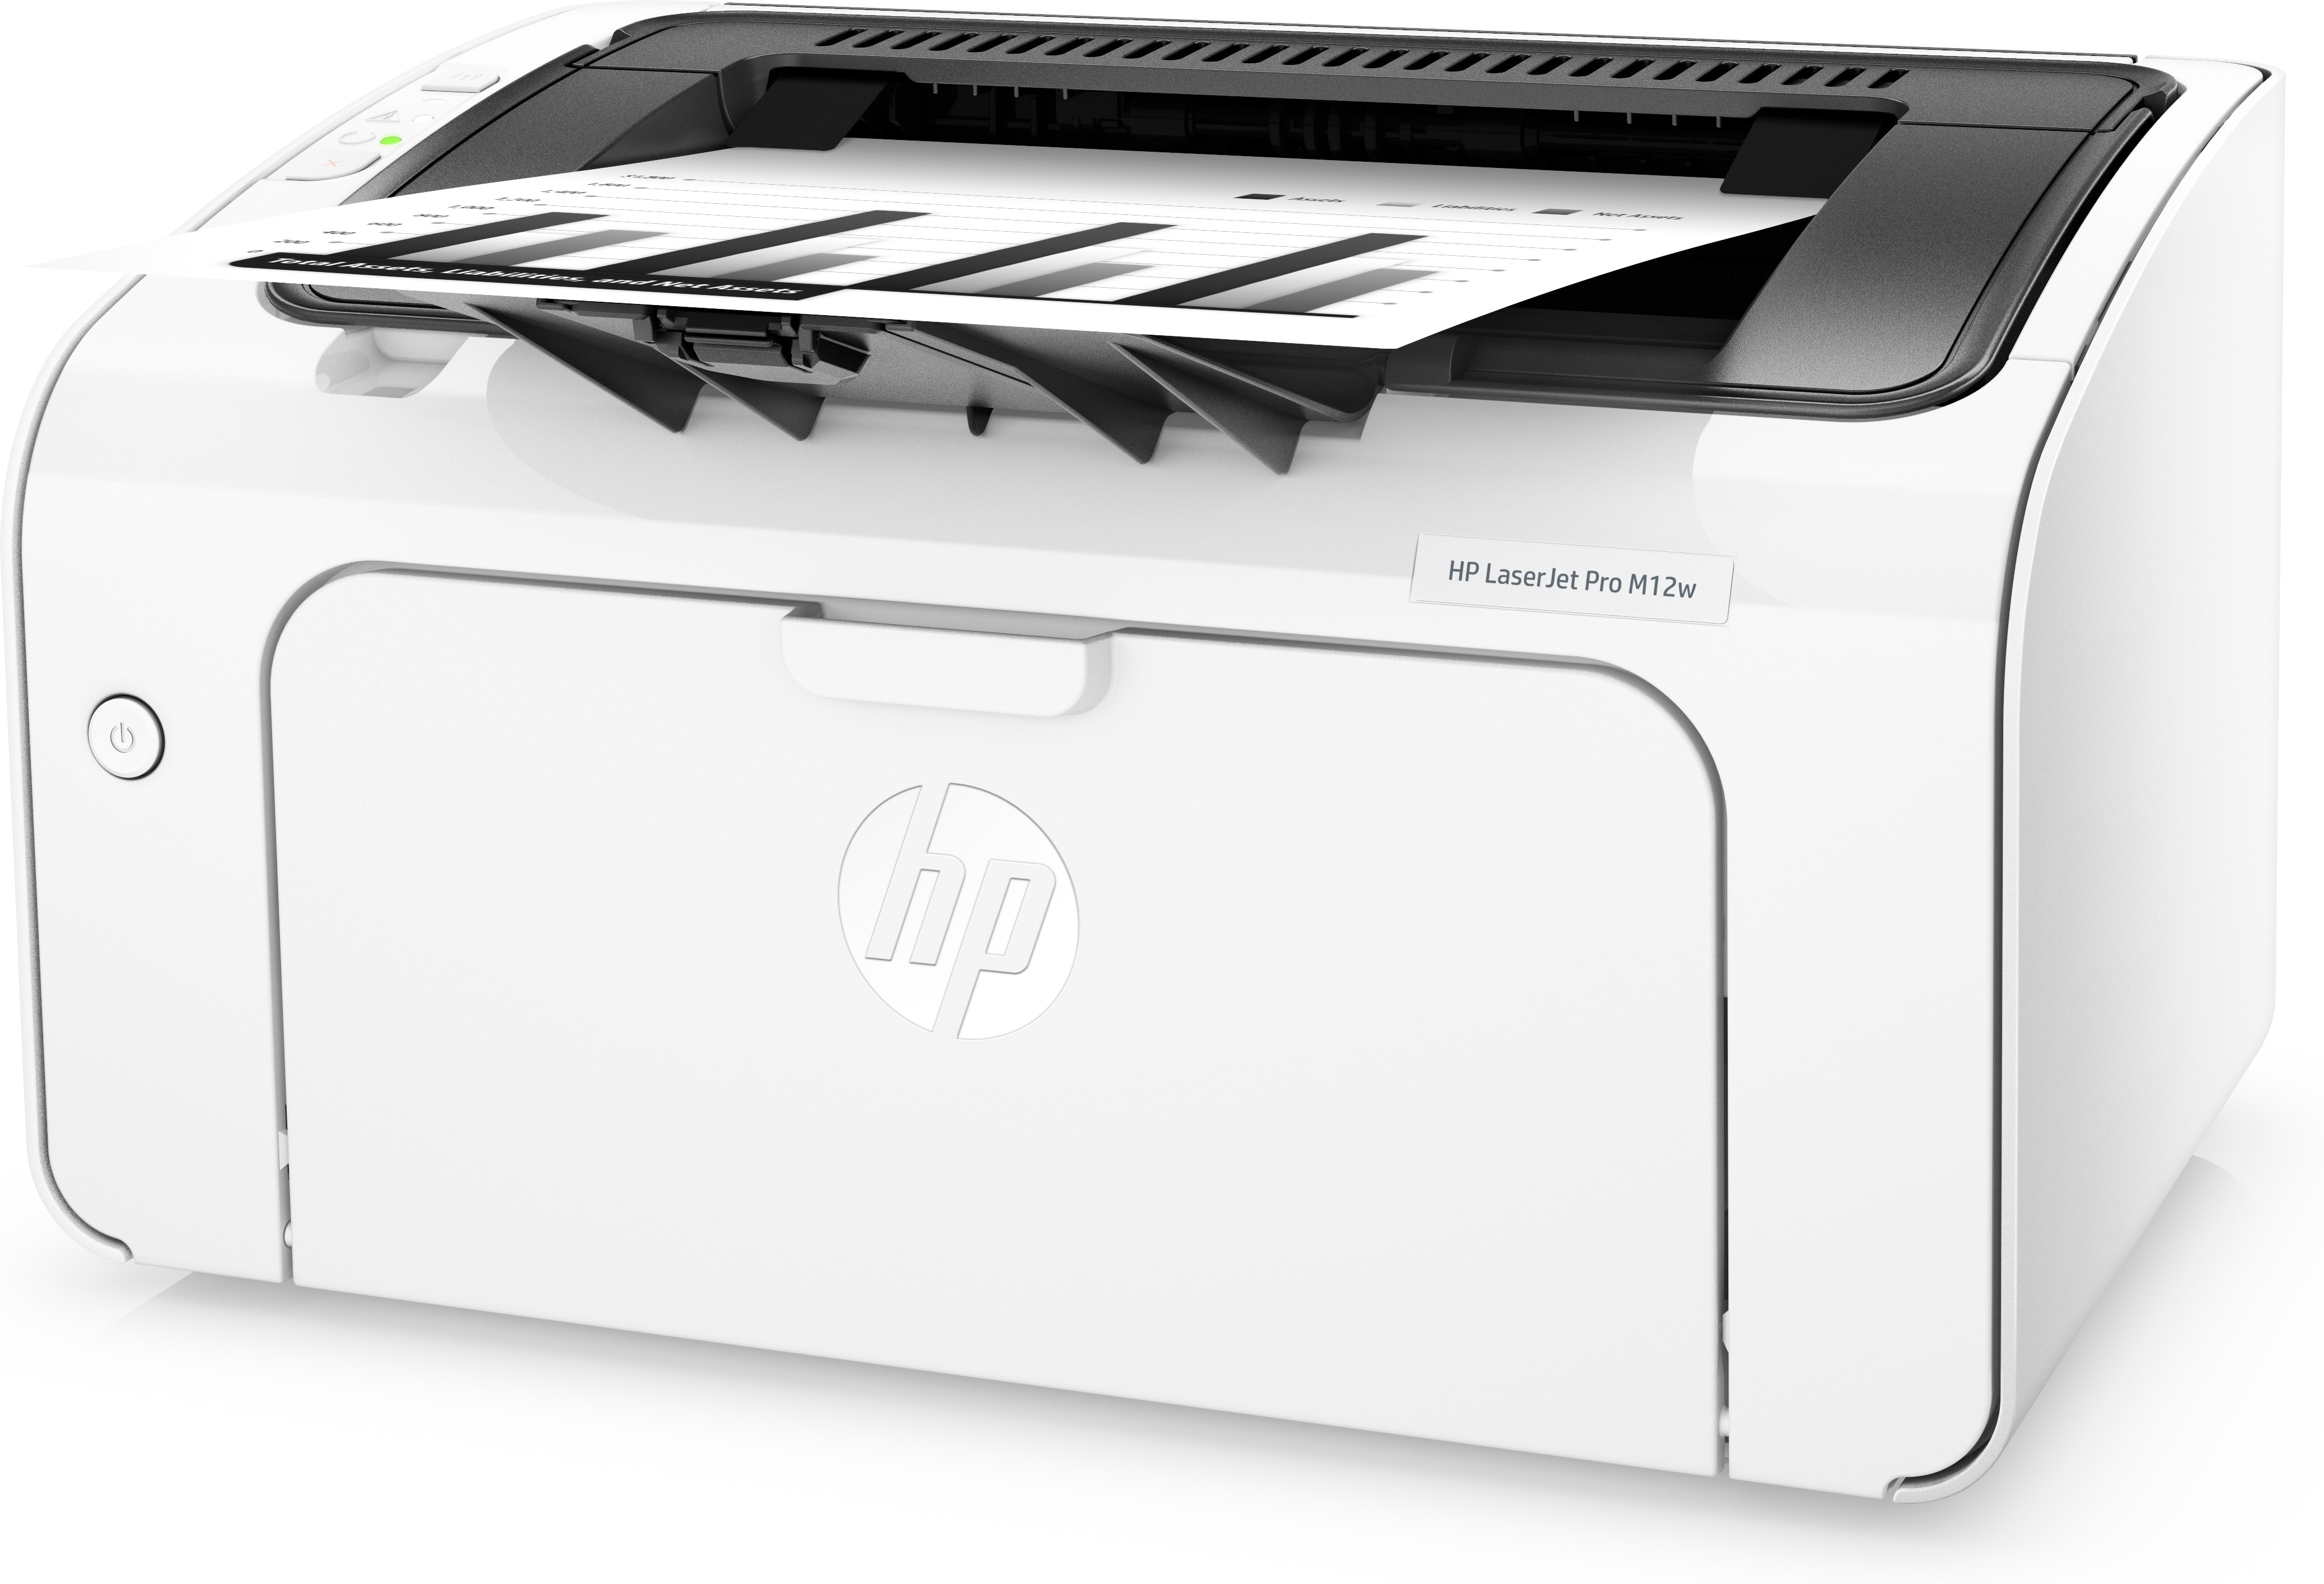 Druckertreiber Hp Laser Jet Pro M12W : Impresora HP LaserJet Pro M12w - Der hp laserjet pro m12w ...